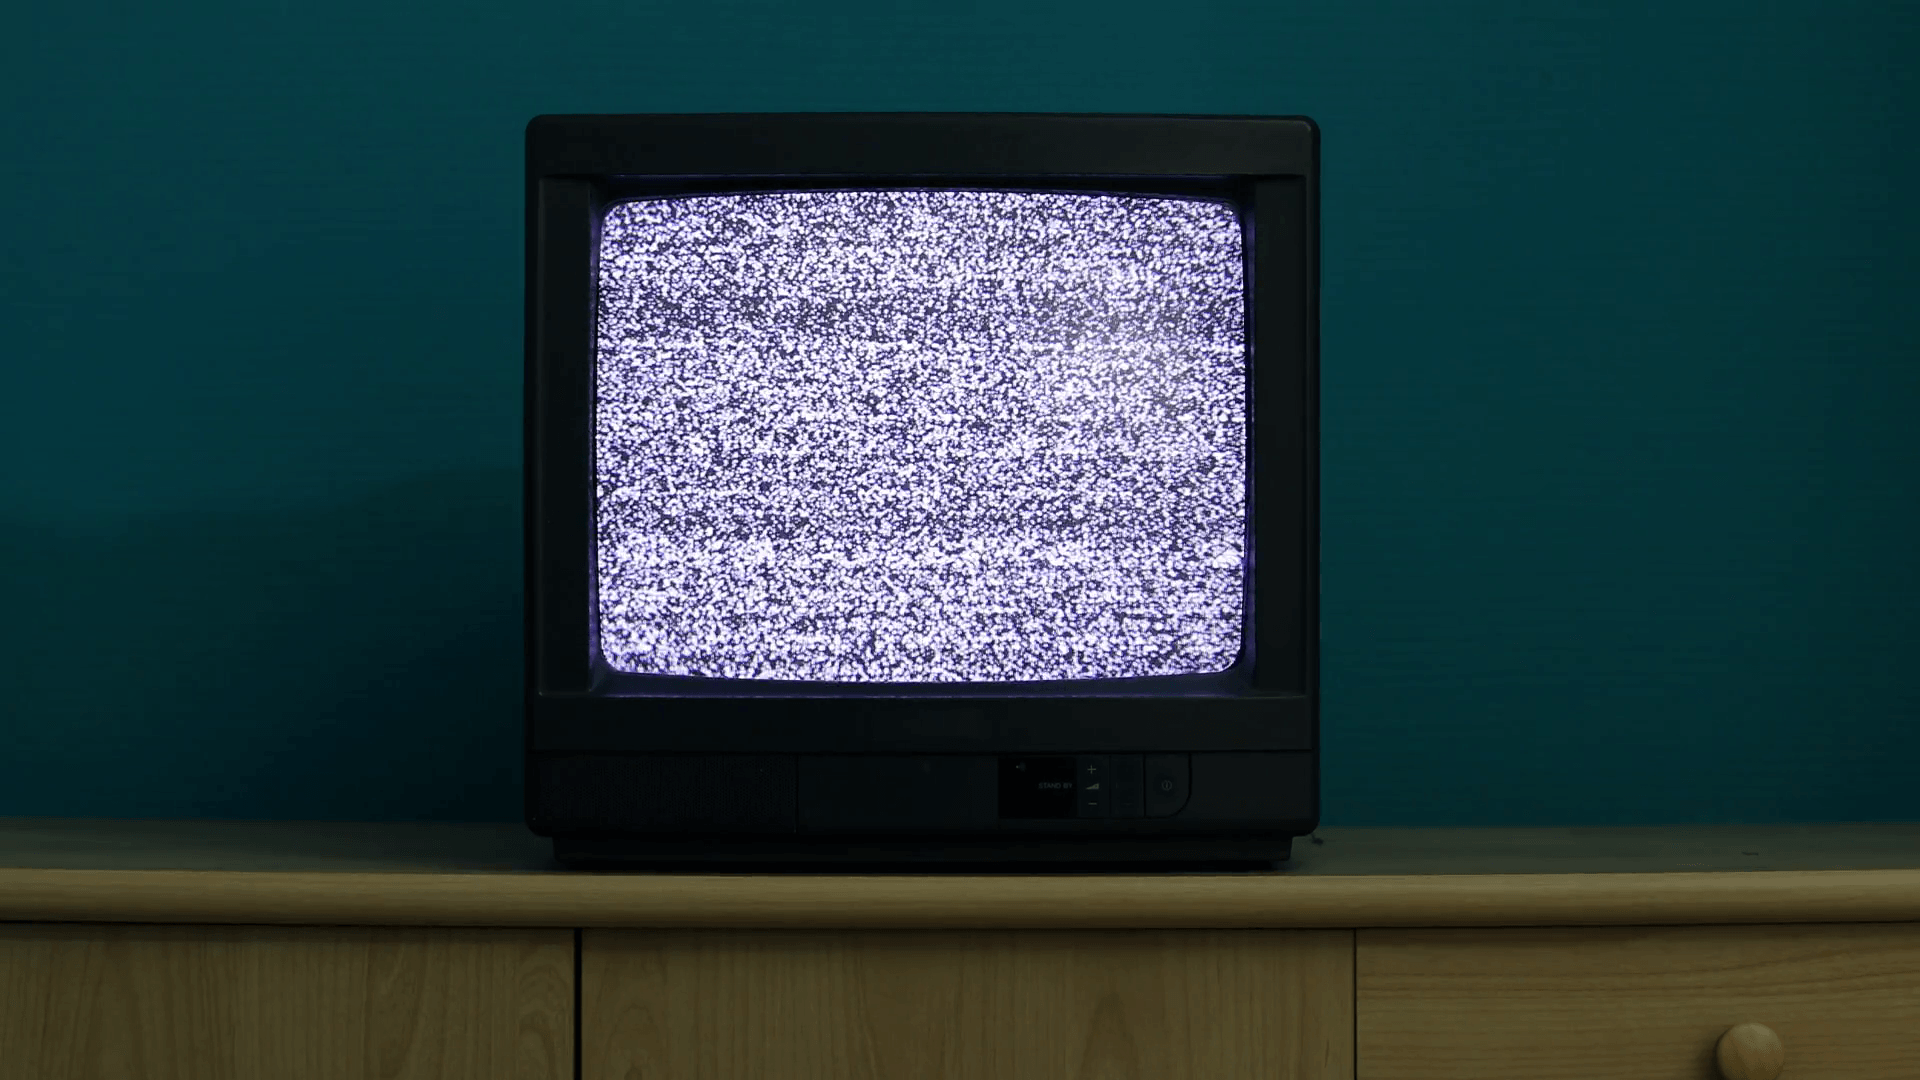 Включение телевизора видео. Старый телевизор. Старый телевизор с помехами. Помехи на телевизоре. Экран старого телевизора.